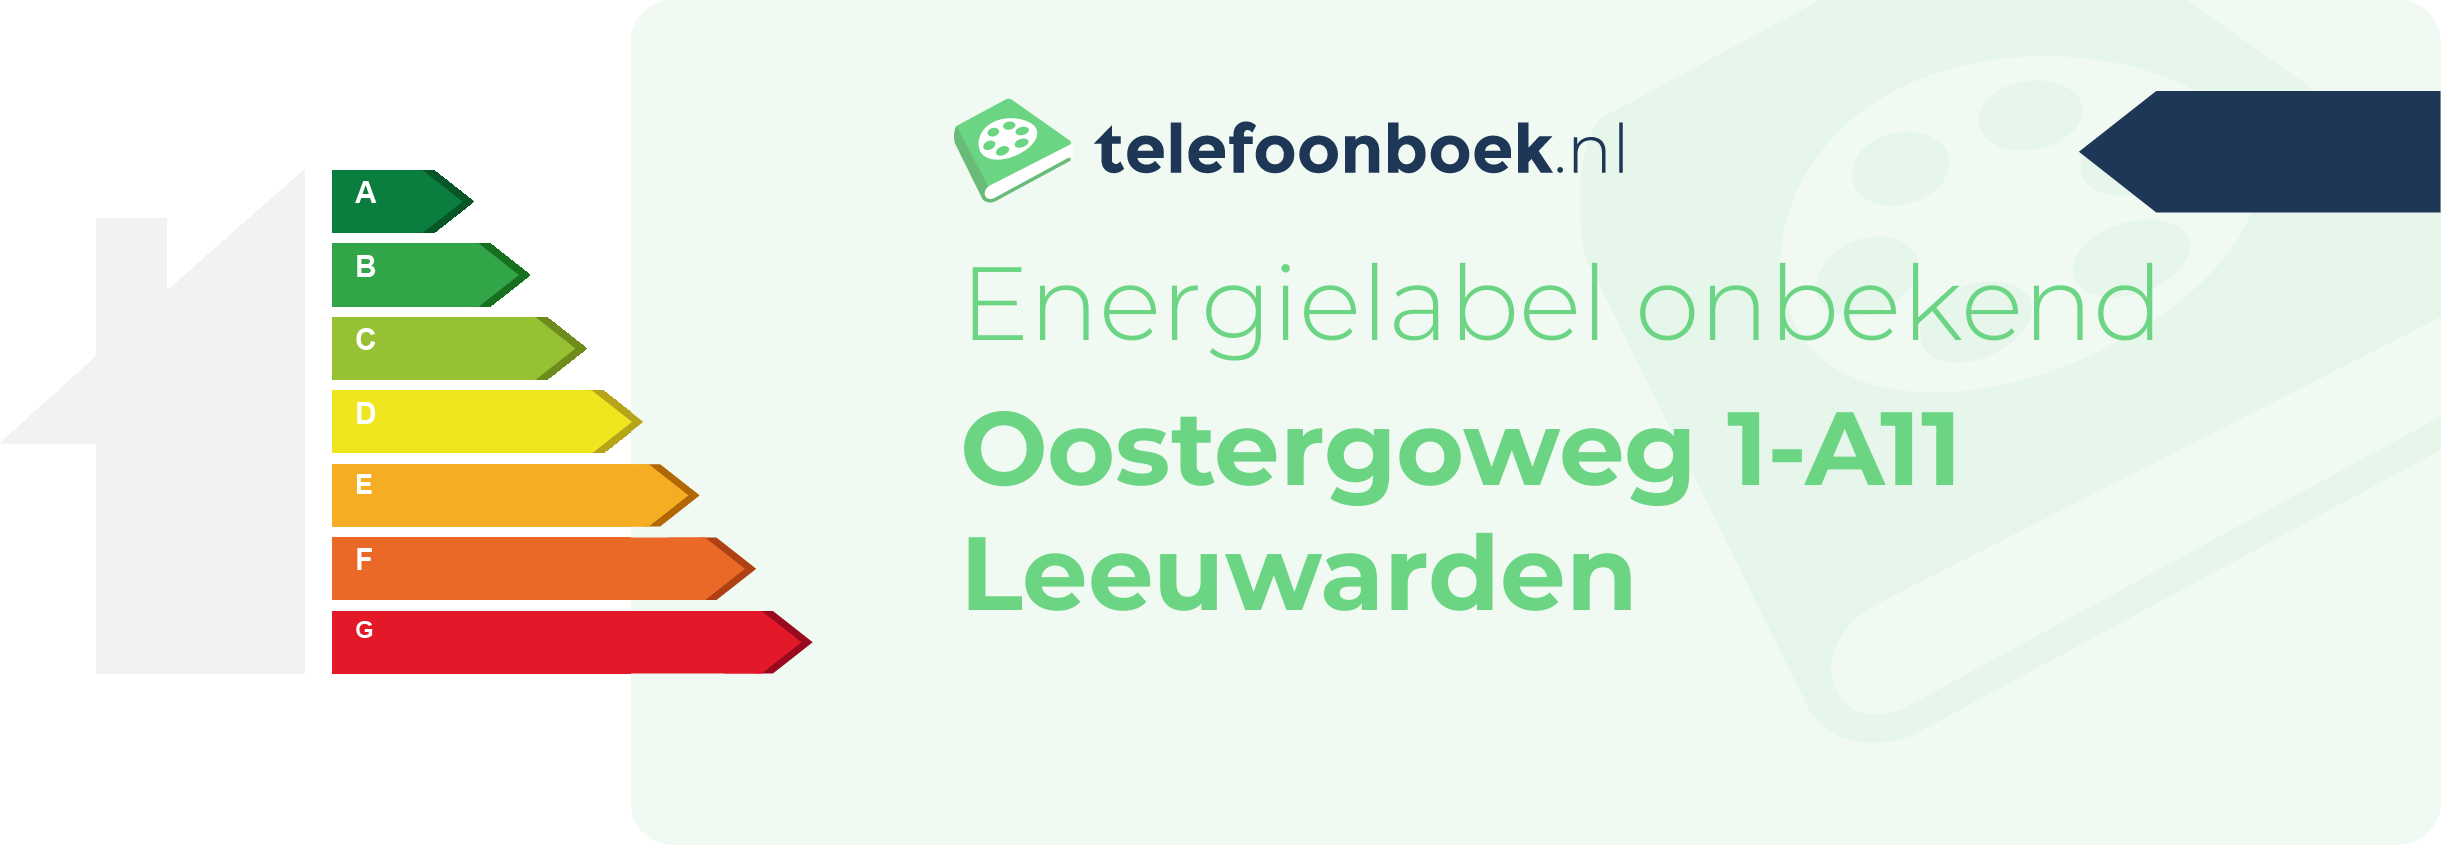 Energielabel Oostergoweg 1-A11 Leeuwarden